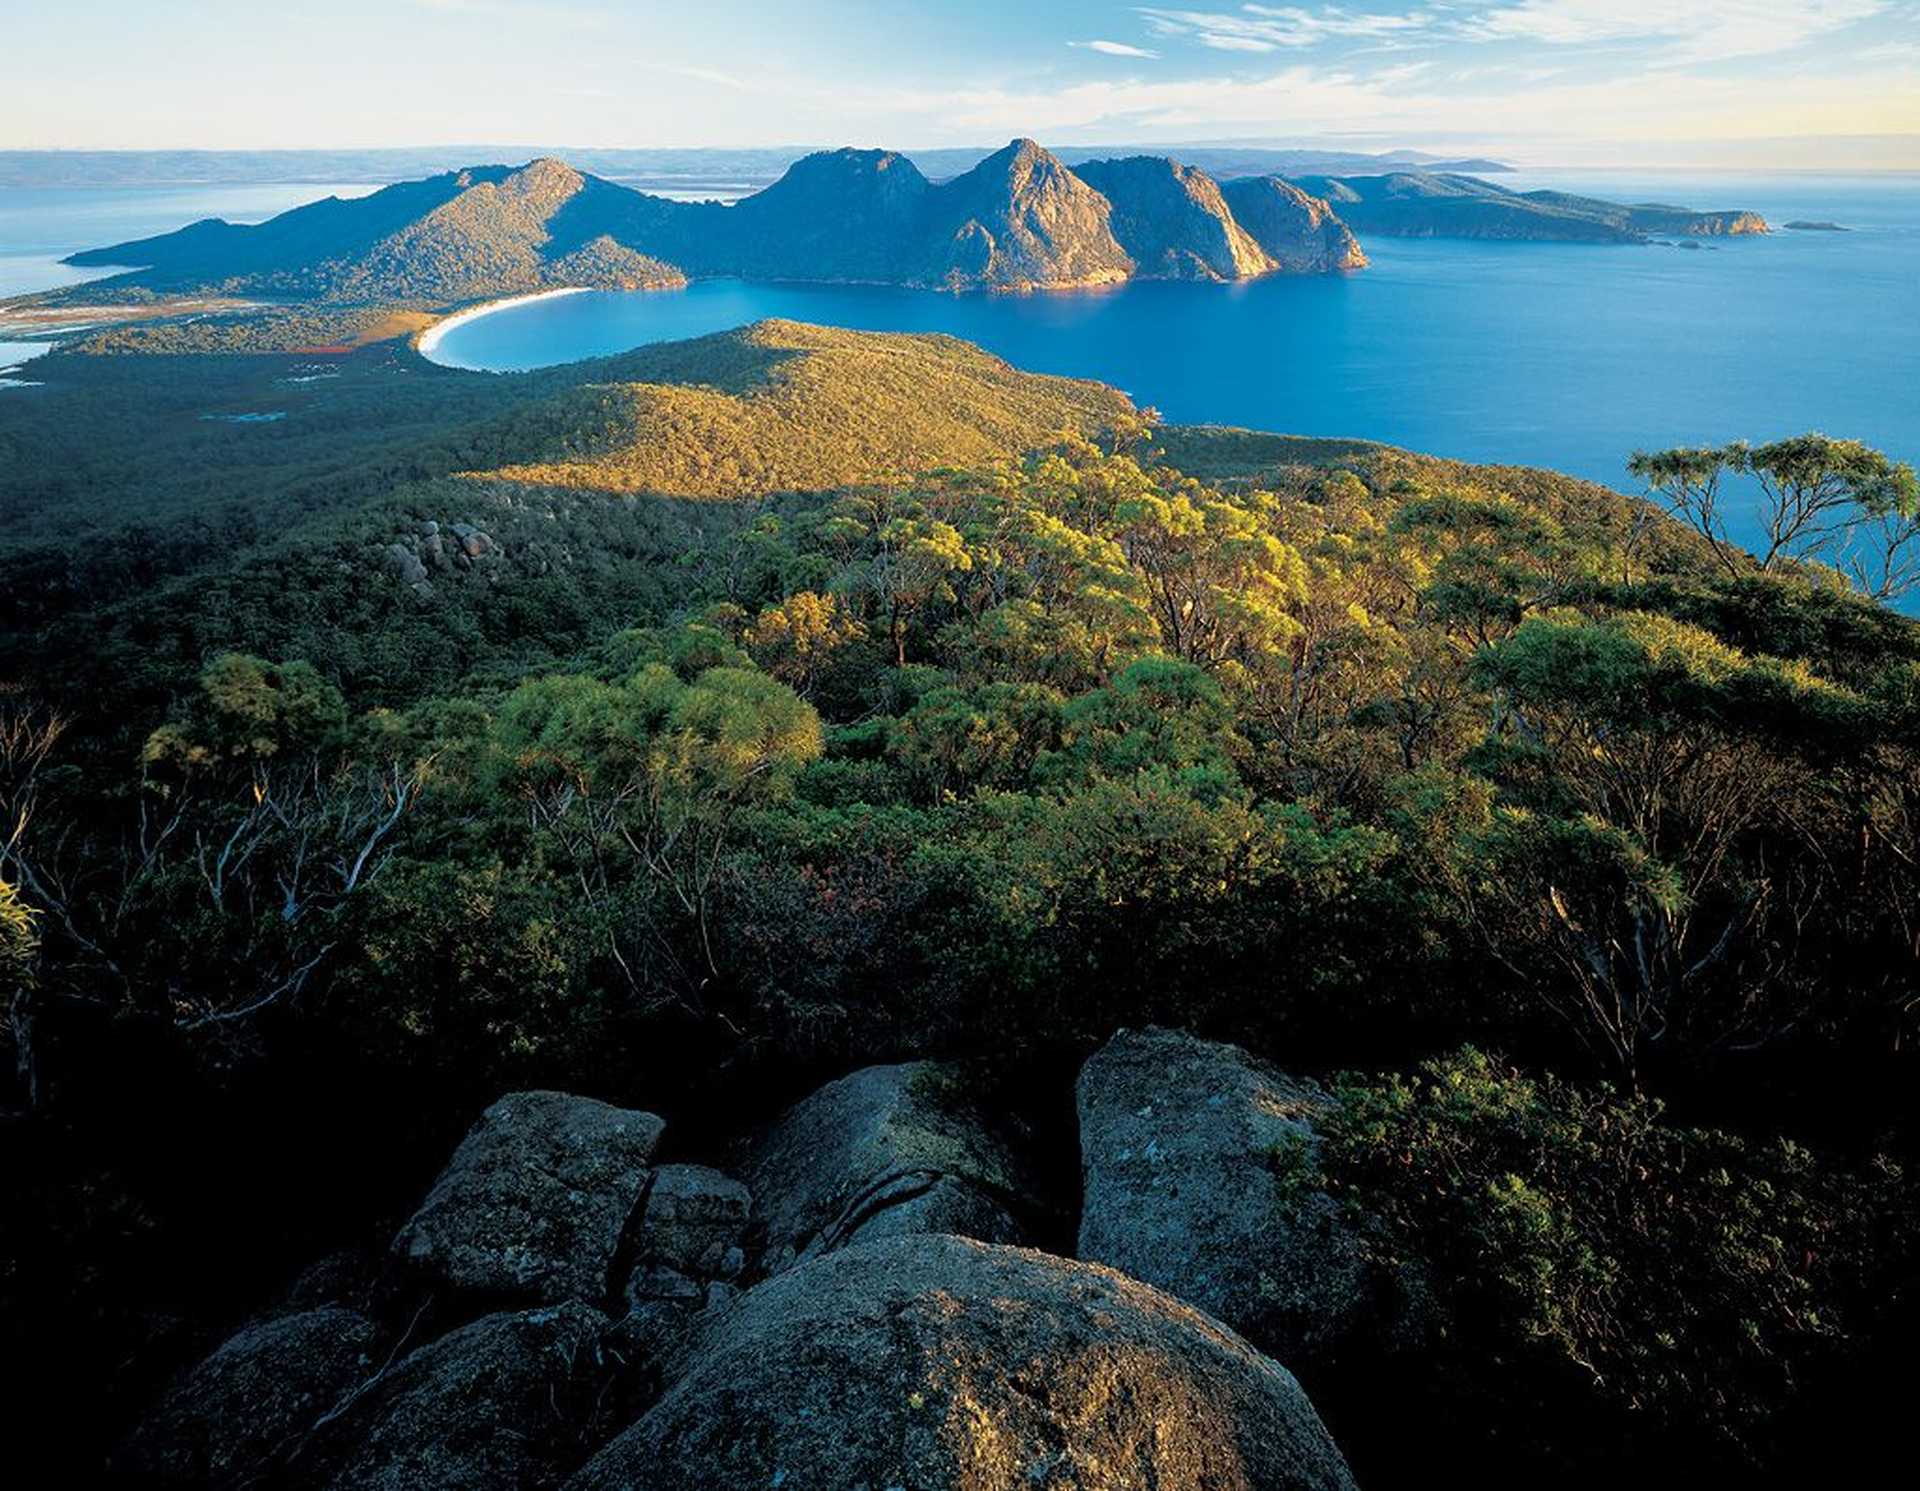 Voyage à thème : Australie : Les visages cachés de Tasmanie avec William Seager